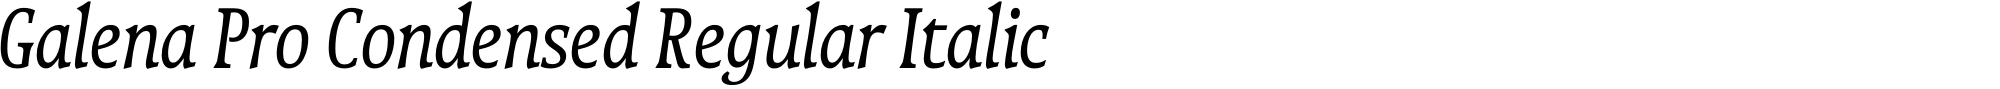 Galena Pro Condensed Regular Italic image